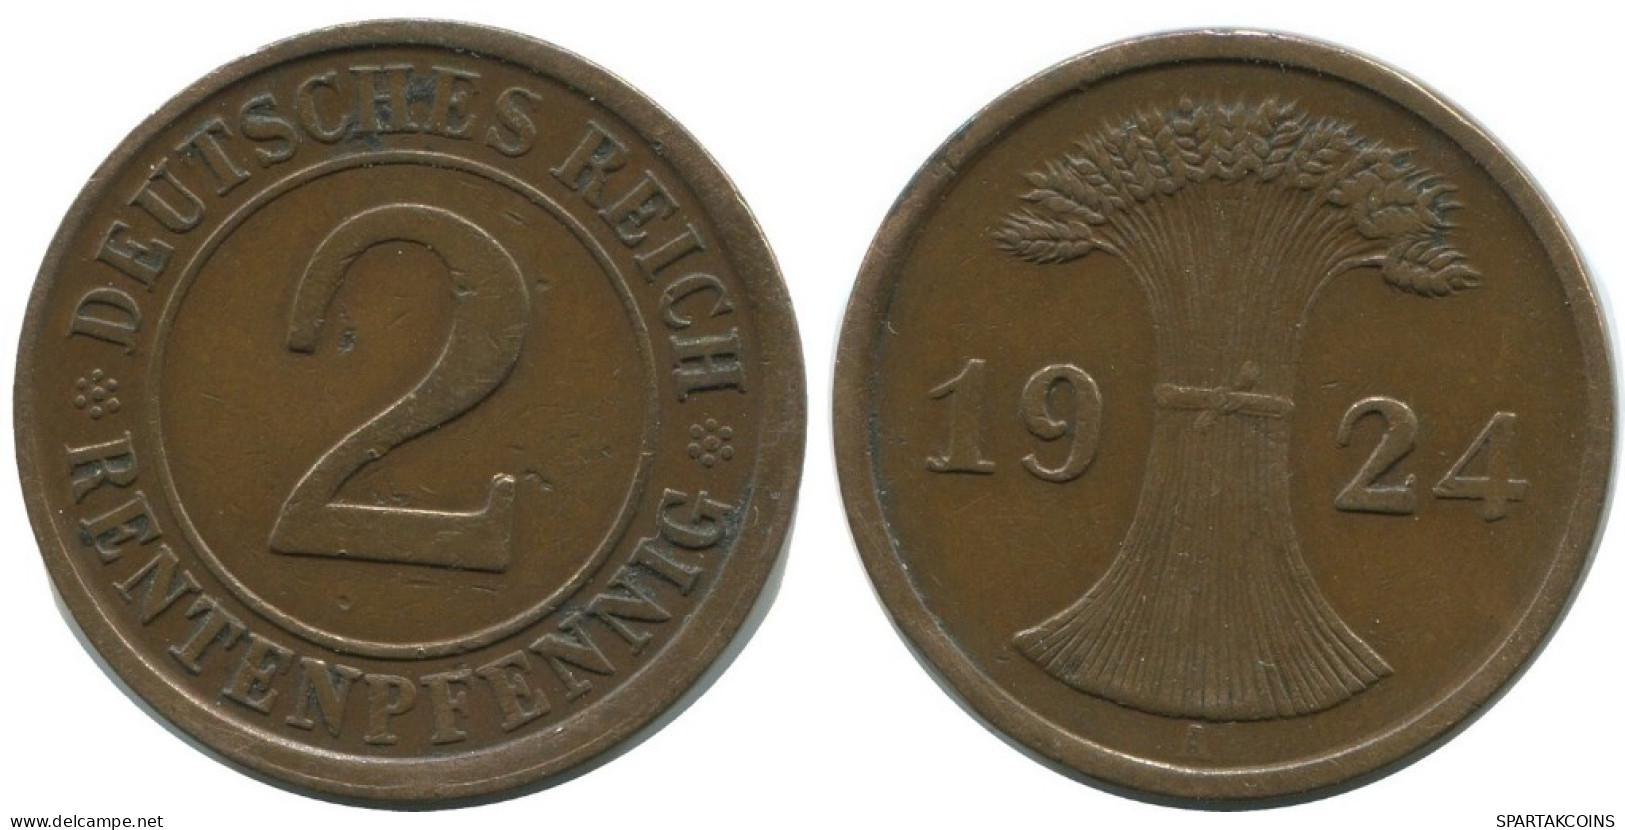 2 RENTENPFENNIG 1924 A ALEMANIA Moneda GERMANY #AD486.9.E.A - 2 Rentenpfennig & 2 Reichspfennig